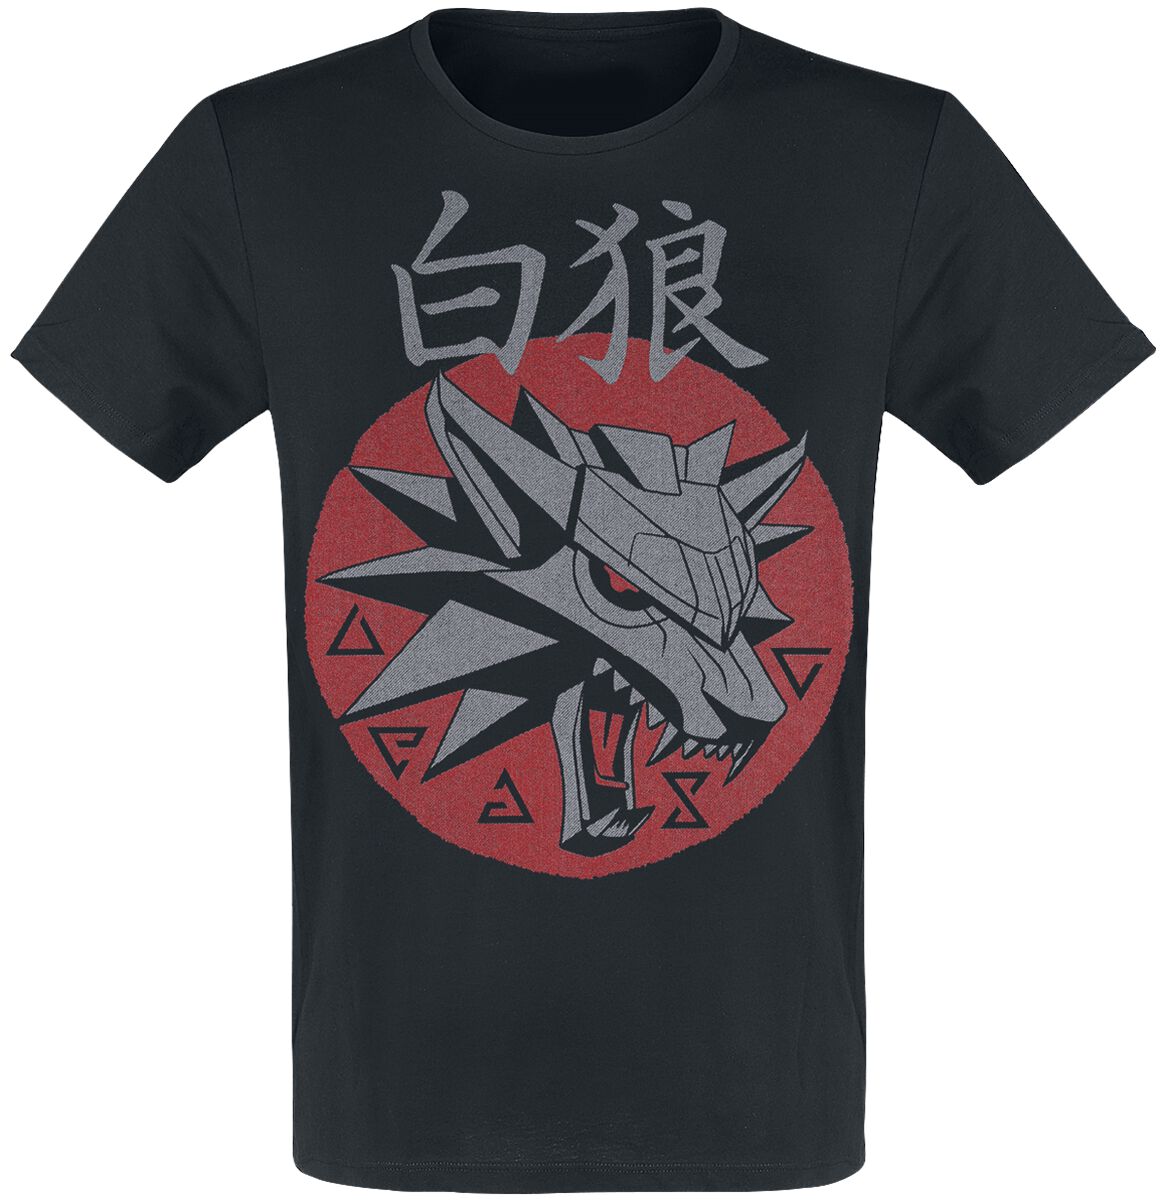 The Witcher - Gaming T-Shirt - School Of The Wolf - S bis XXL - für Männer - Größe S - schwarz